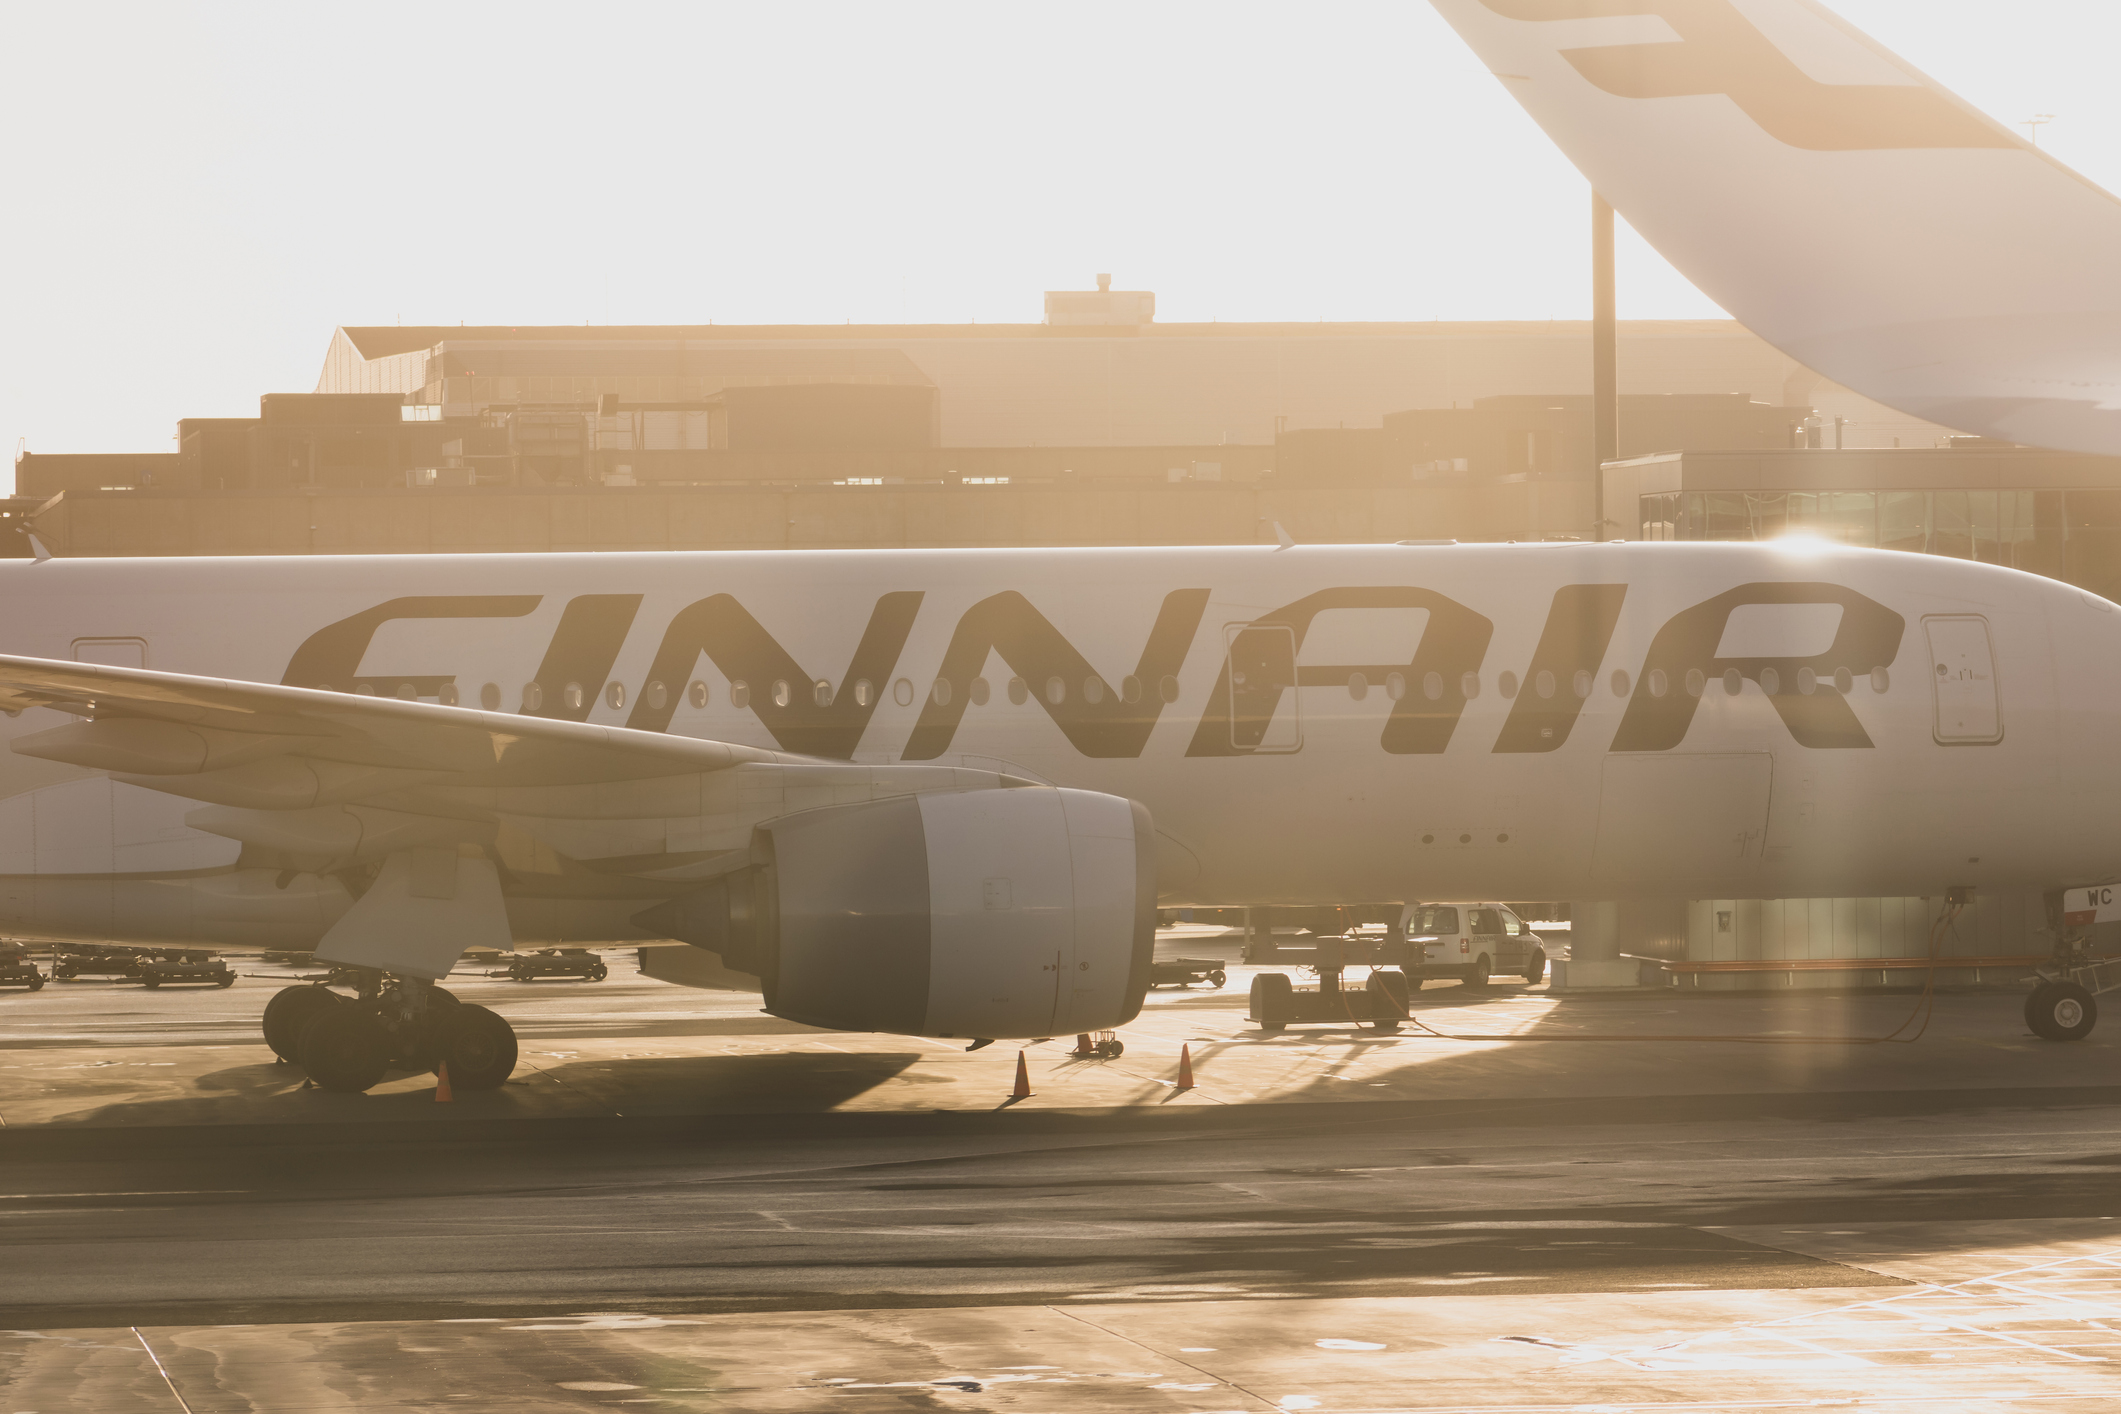 Rahastot innostuivat Finnairista, mitä tekivät yhtiön vanhat suuromistajat?